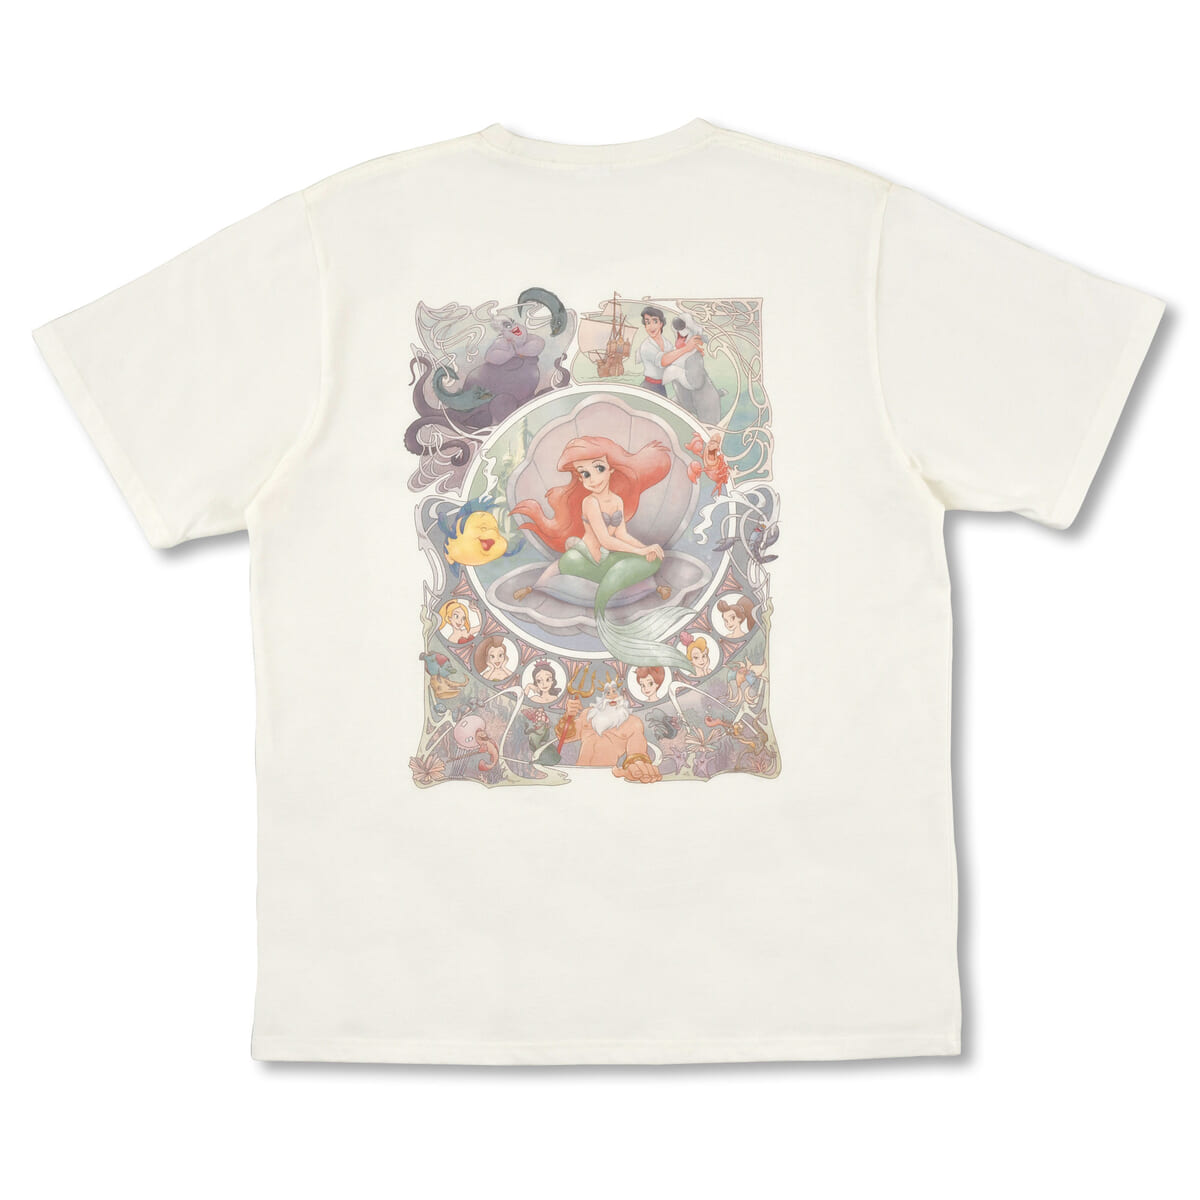 リトル・マーメイド 半袖Tシャツ Disney THE LITTLE MERMAID 35th